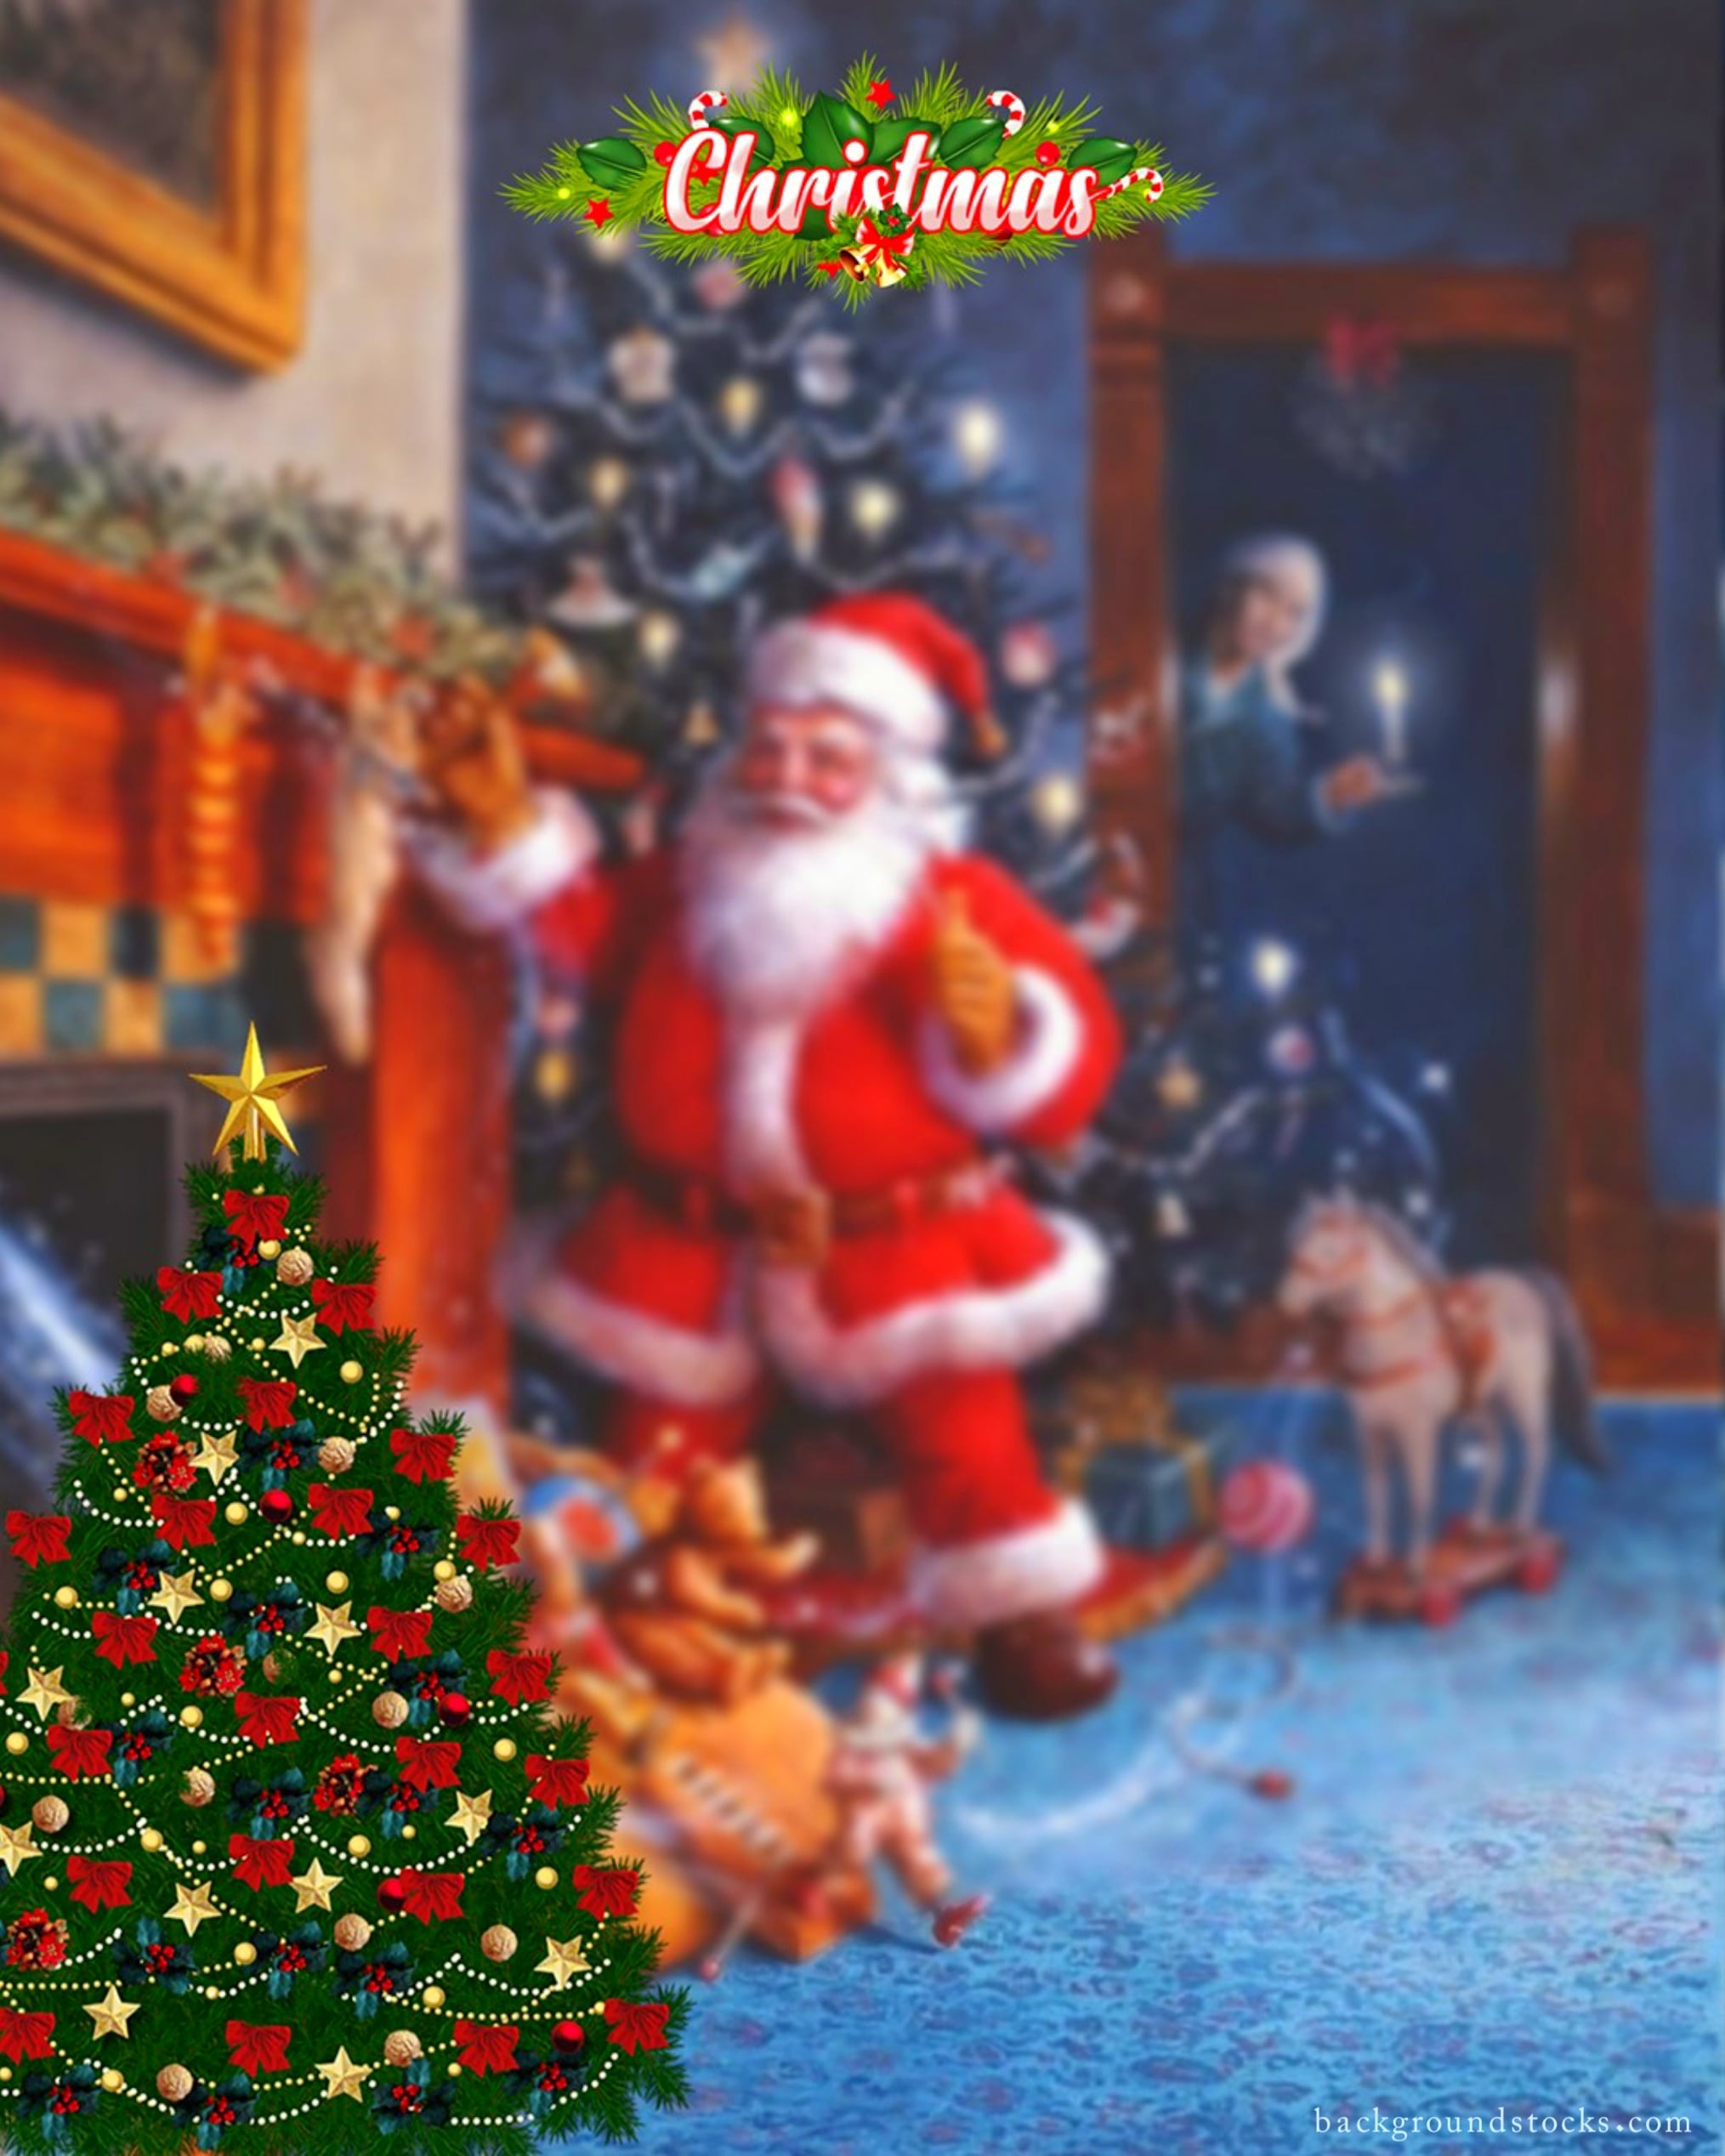 Beautiful Christmas Background Image 